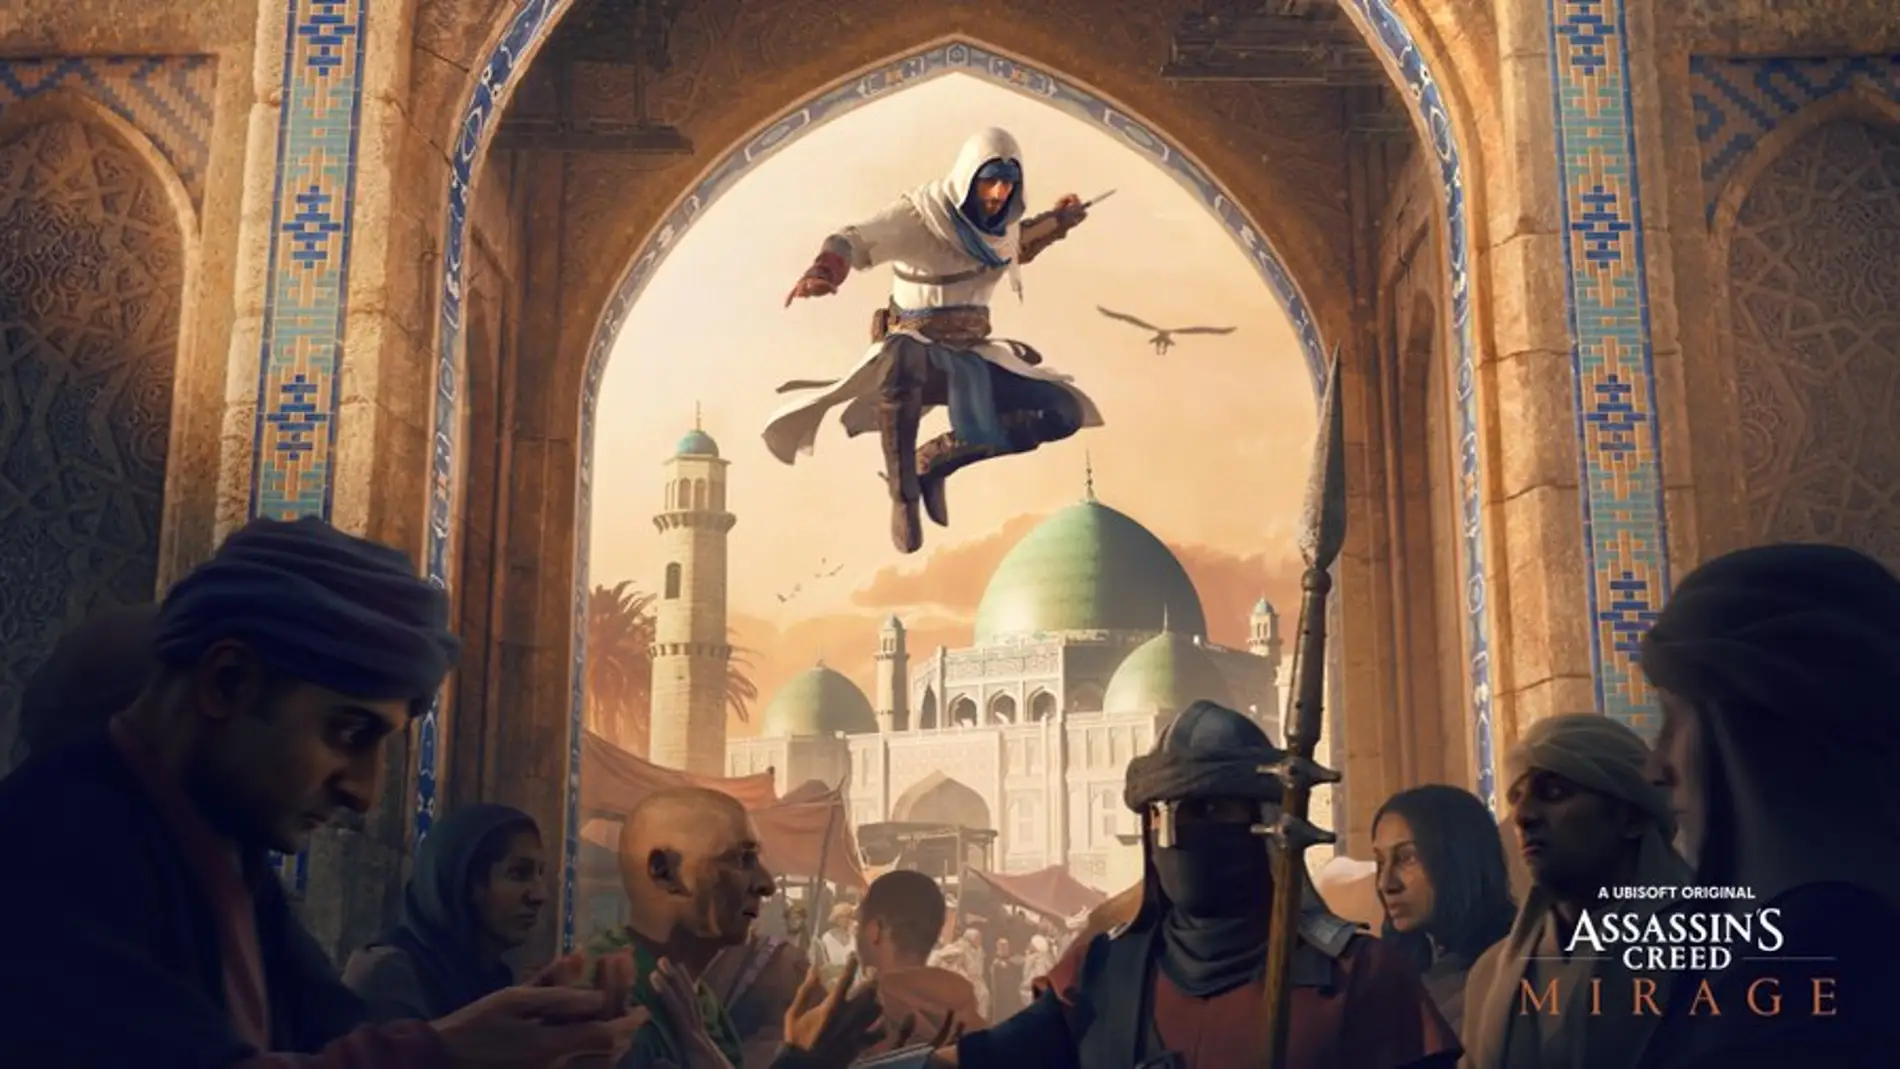 Ya es oficial, 'Assassin's Creed Mirage' es el nuevo juego de la saga 